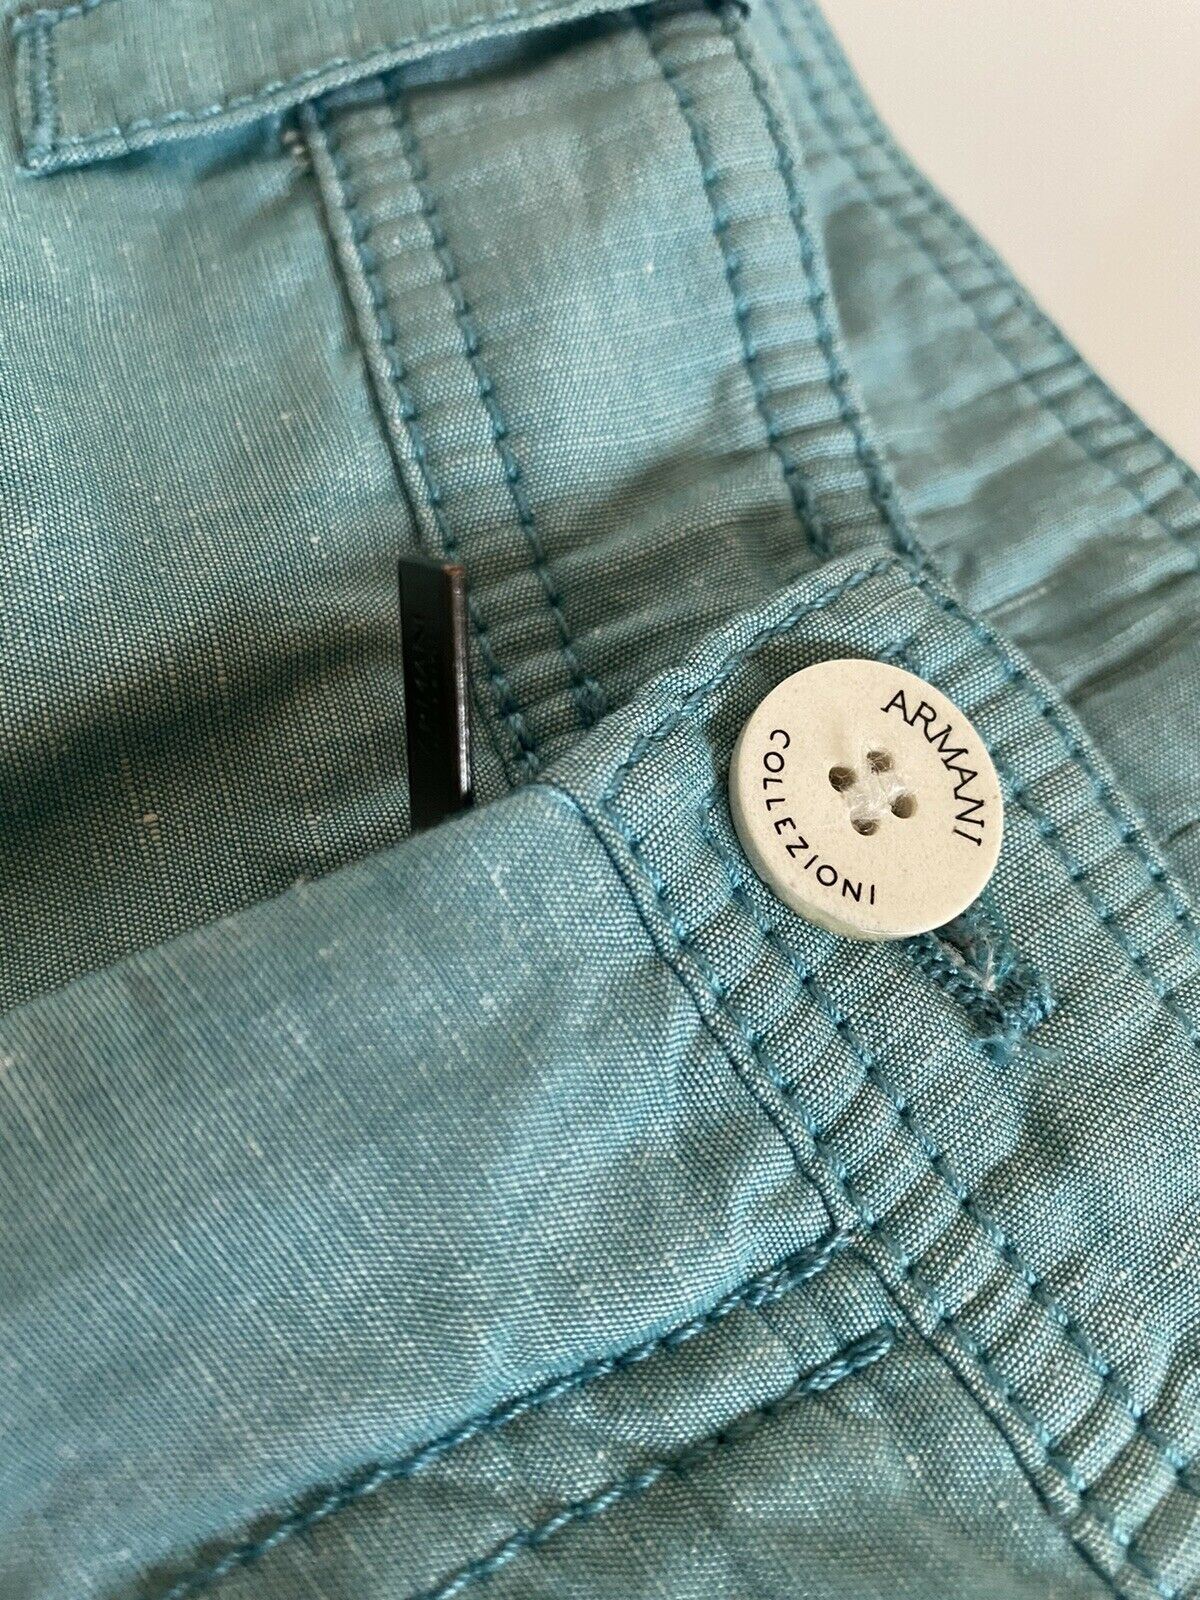 Neu mit Etikett: 295 $ Armani Collezioni Hellgrüne Shorts für Herren, Größe 30 US (46 Eu) NCP80S